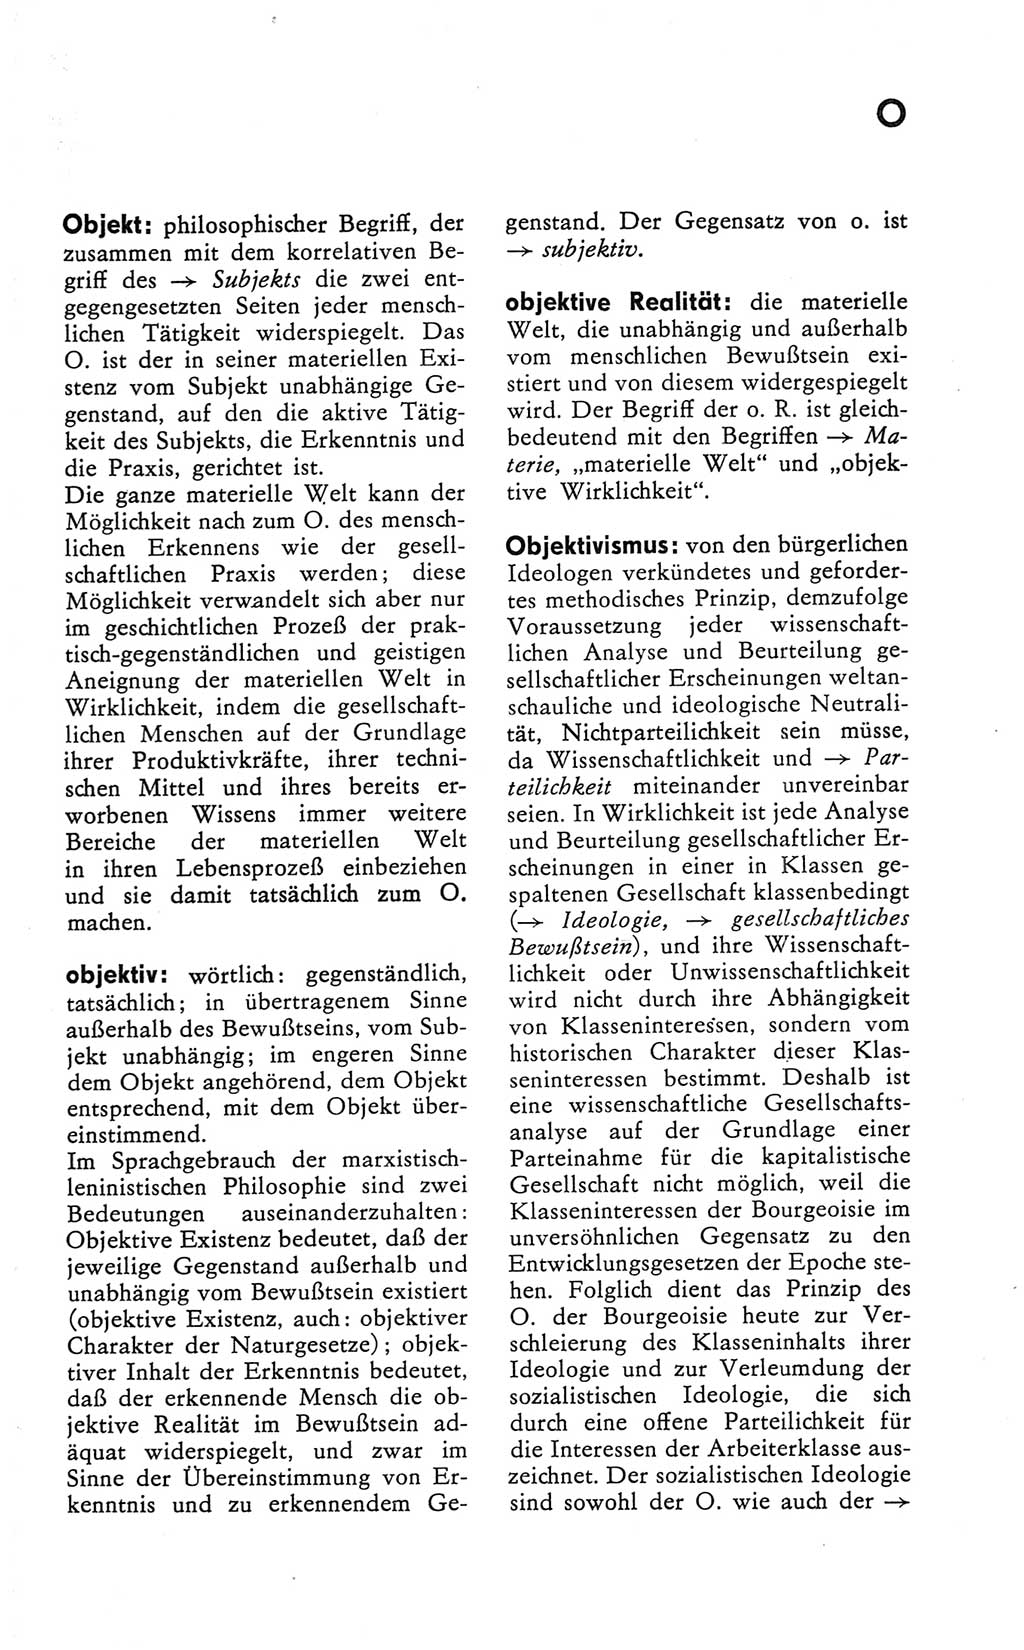 Kleines Wörterbuch der marxistisch-leninistischen Philosophie [Deutsche Demokratische Republik (DDR)] 1981, Seite 237 (Kl. Wb. ML Phil. DDR 1981, S. 237)